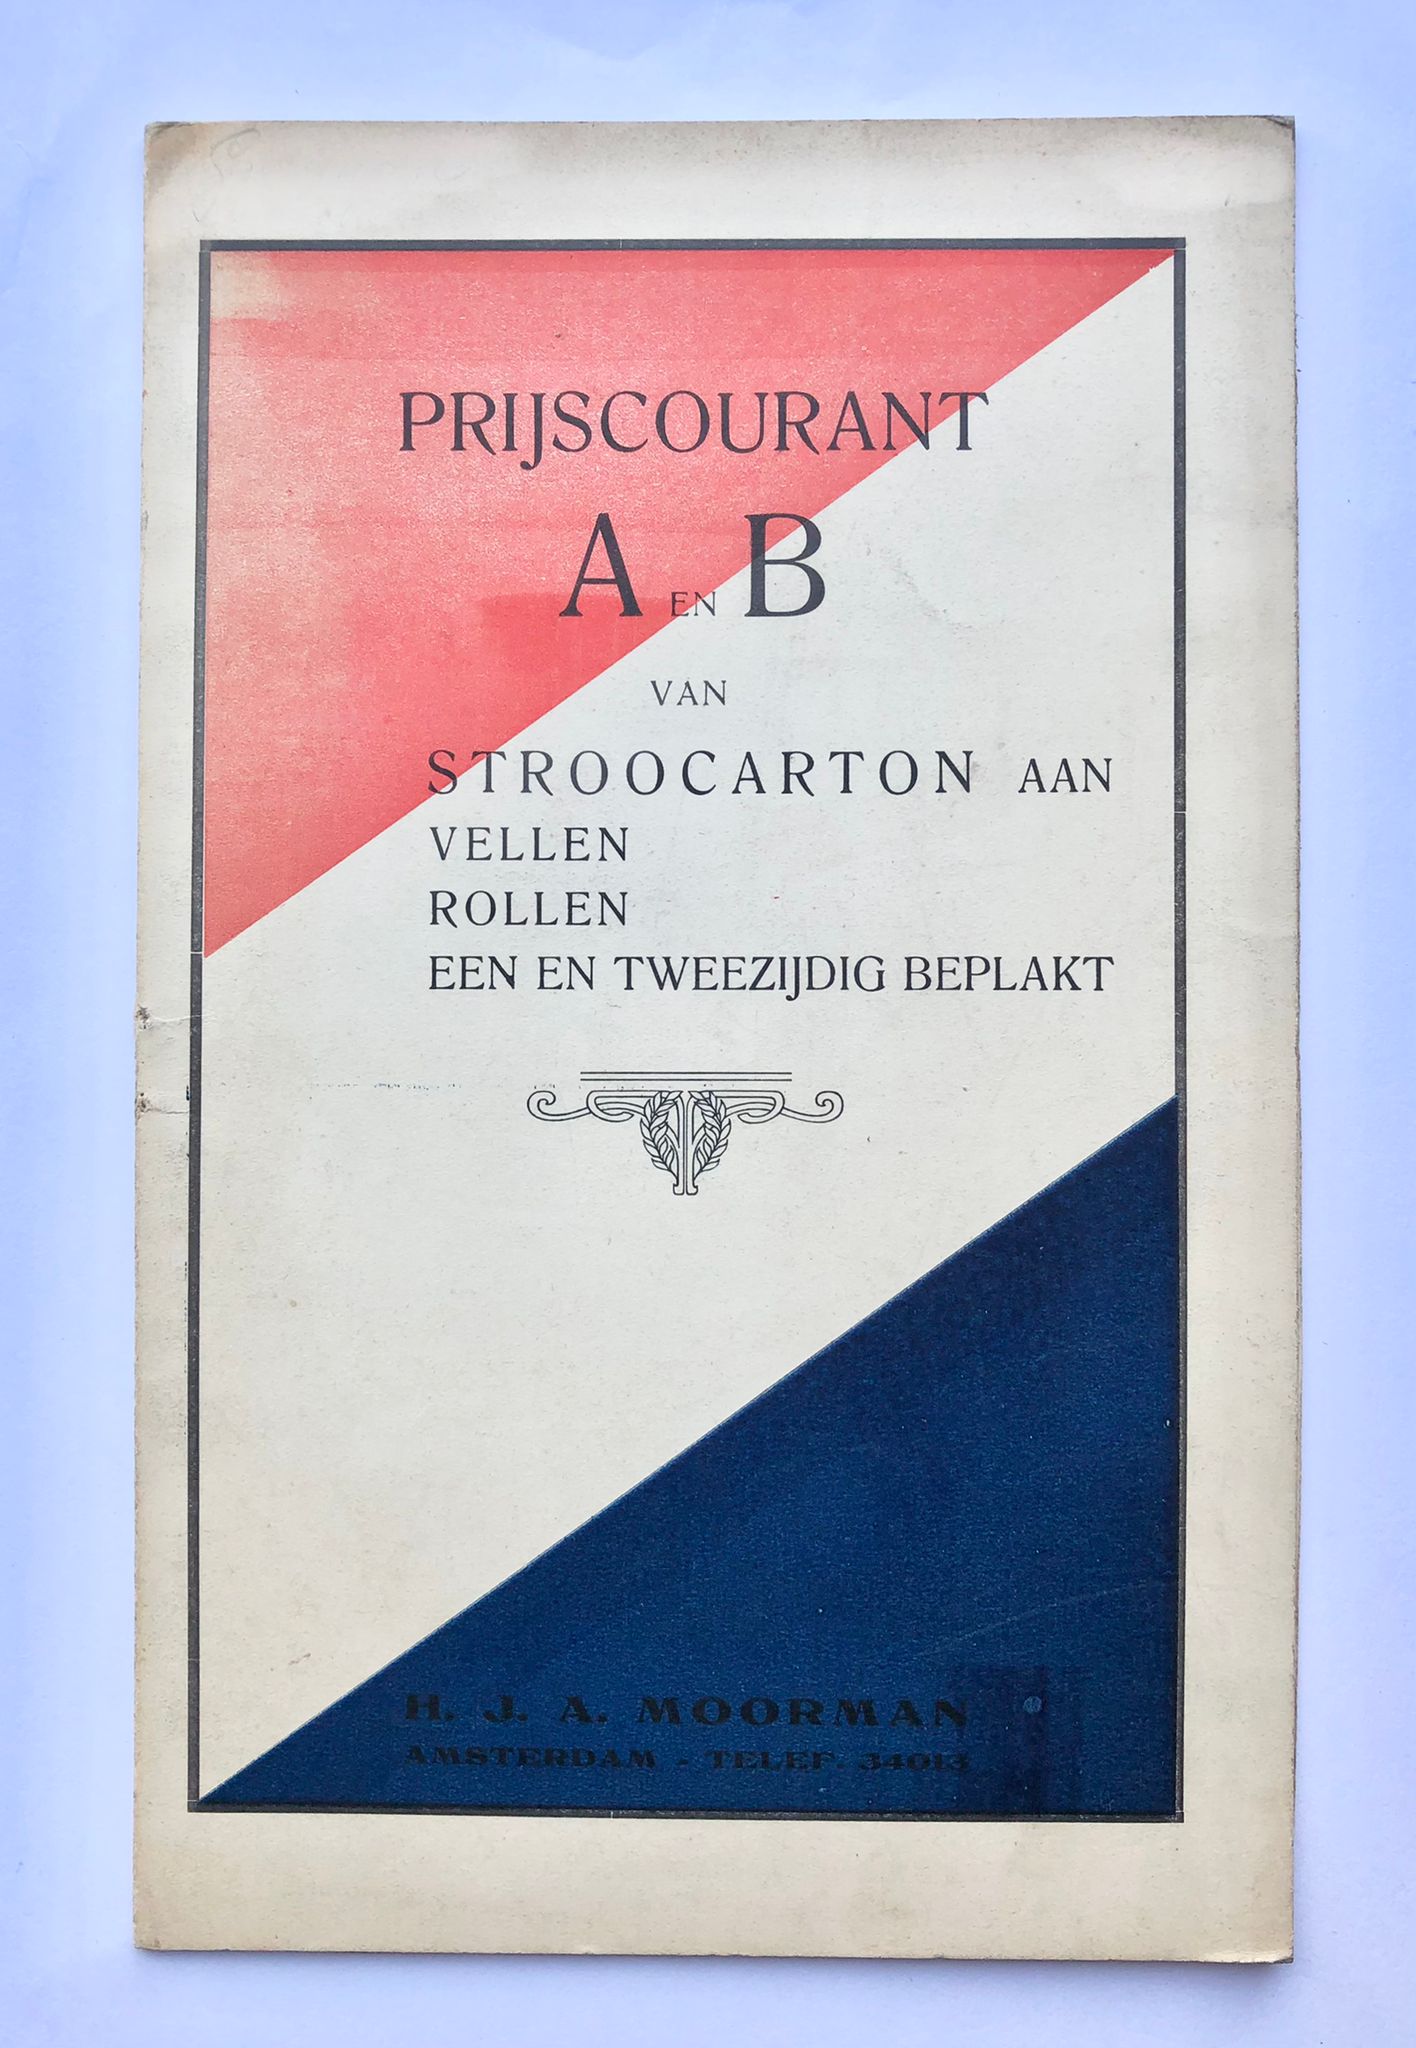 [Printing press, Amsterdam] Prijscourant A en B van Stroocarton aan vellen, rollen, een en tweezijdig beplakt, H. J. A. Moorman, Amsterdam [s.d.], 6 pp.